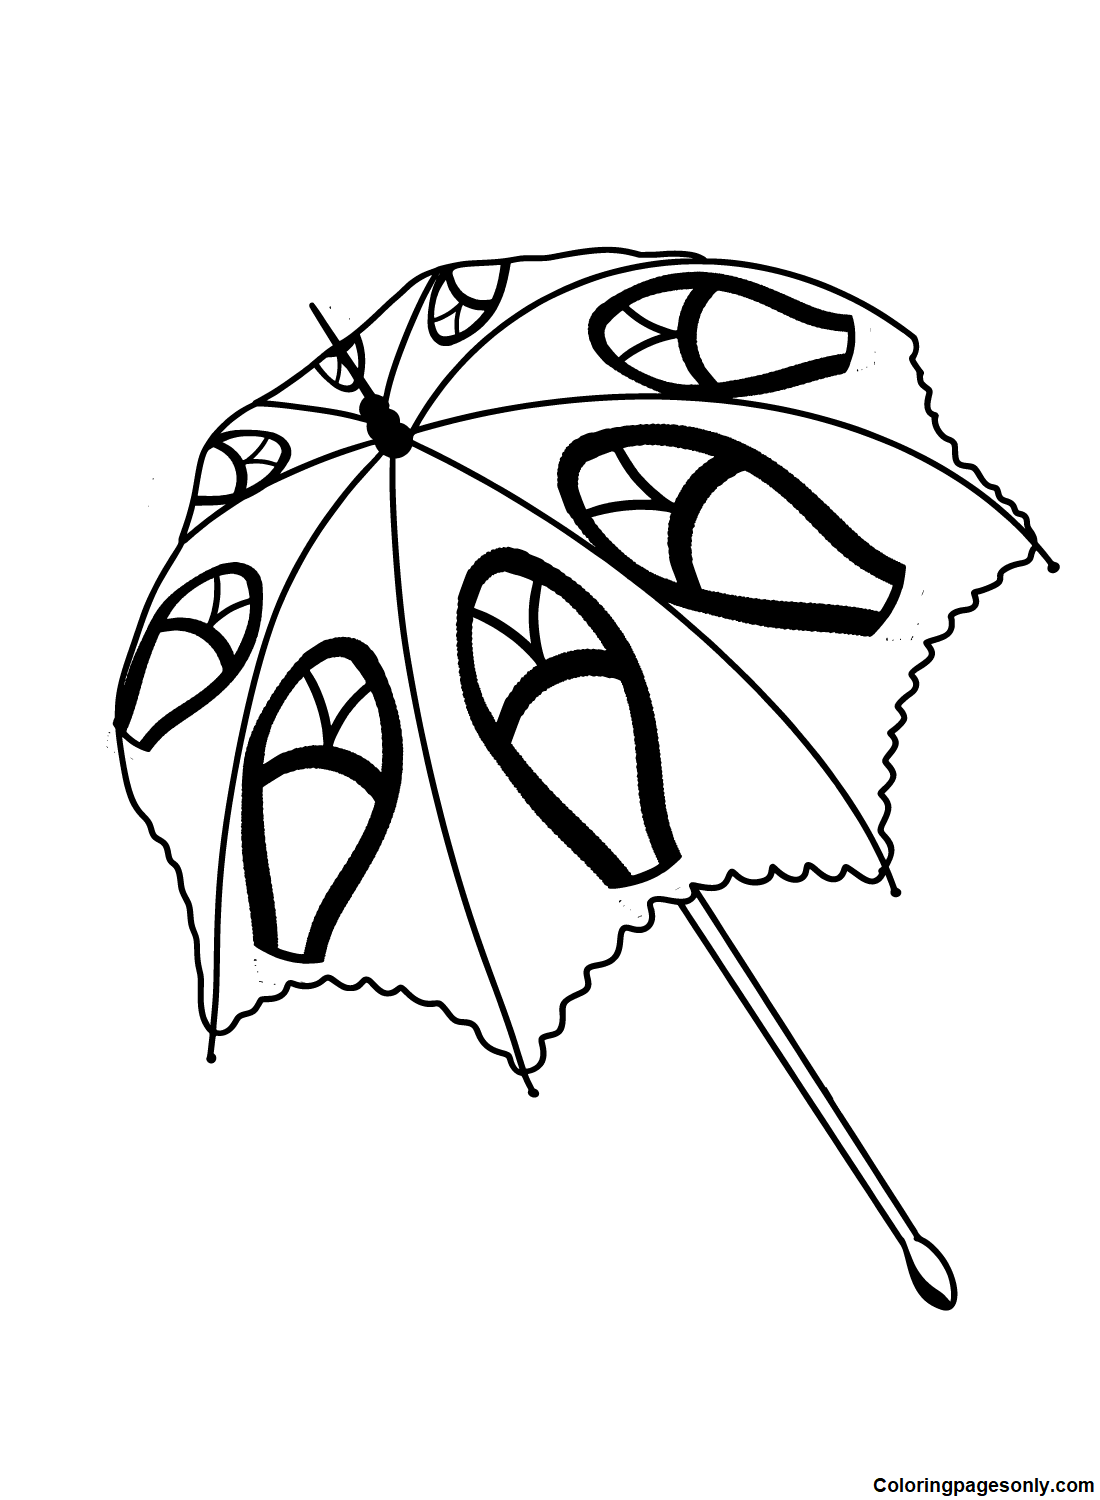 Guarda-chuva para impressão grátis da Umbrella